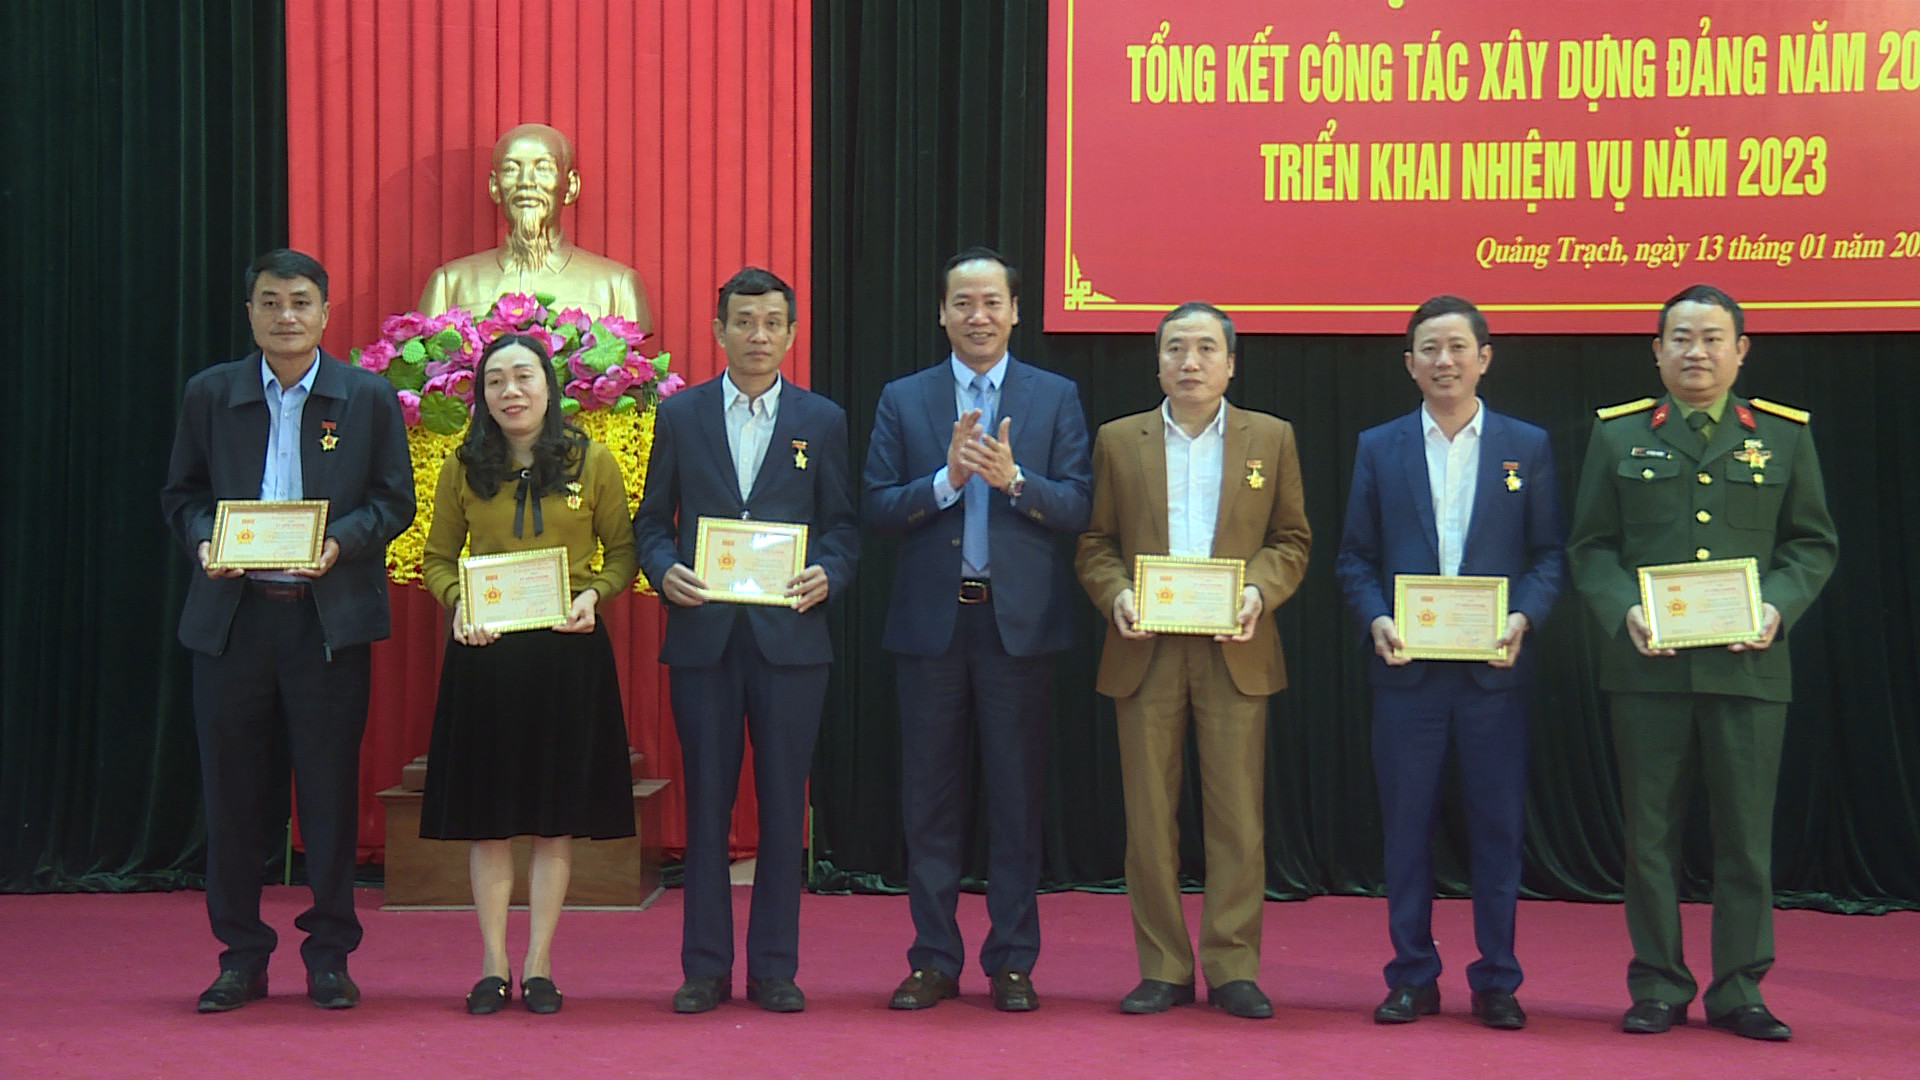 Quảng Trạch: Triển khai nhiệm vụ công tác xây dựng Đảng năm 2023